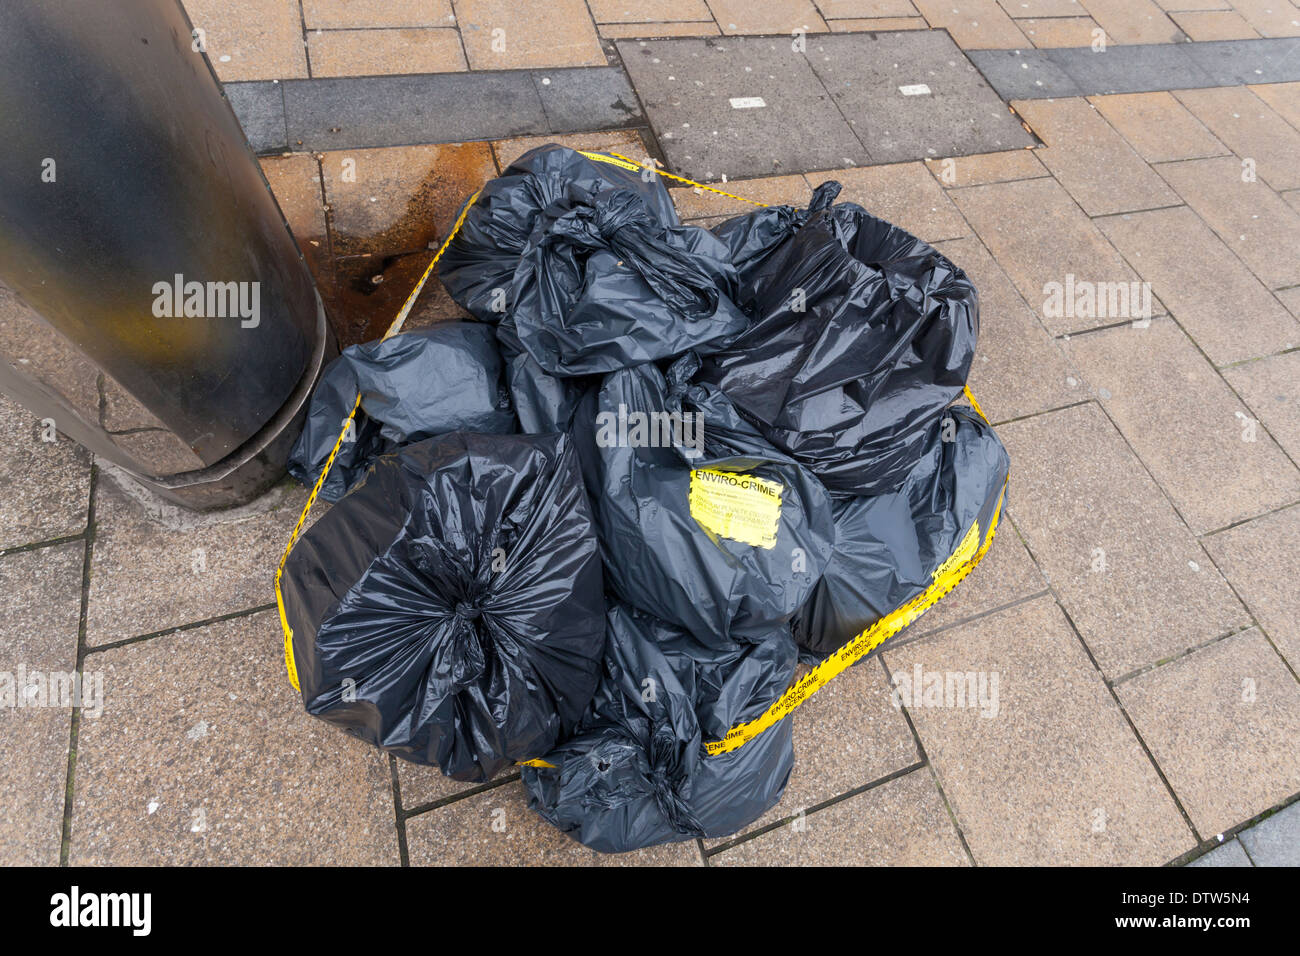 La scène du crime. Les décharges sauvages ou le déversement illégal de déchets. Sacs de détritus laissés sur une rue du centre-ville de Sheffield, England, UK Banque D'Images